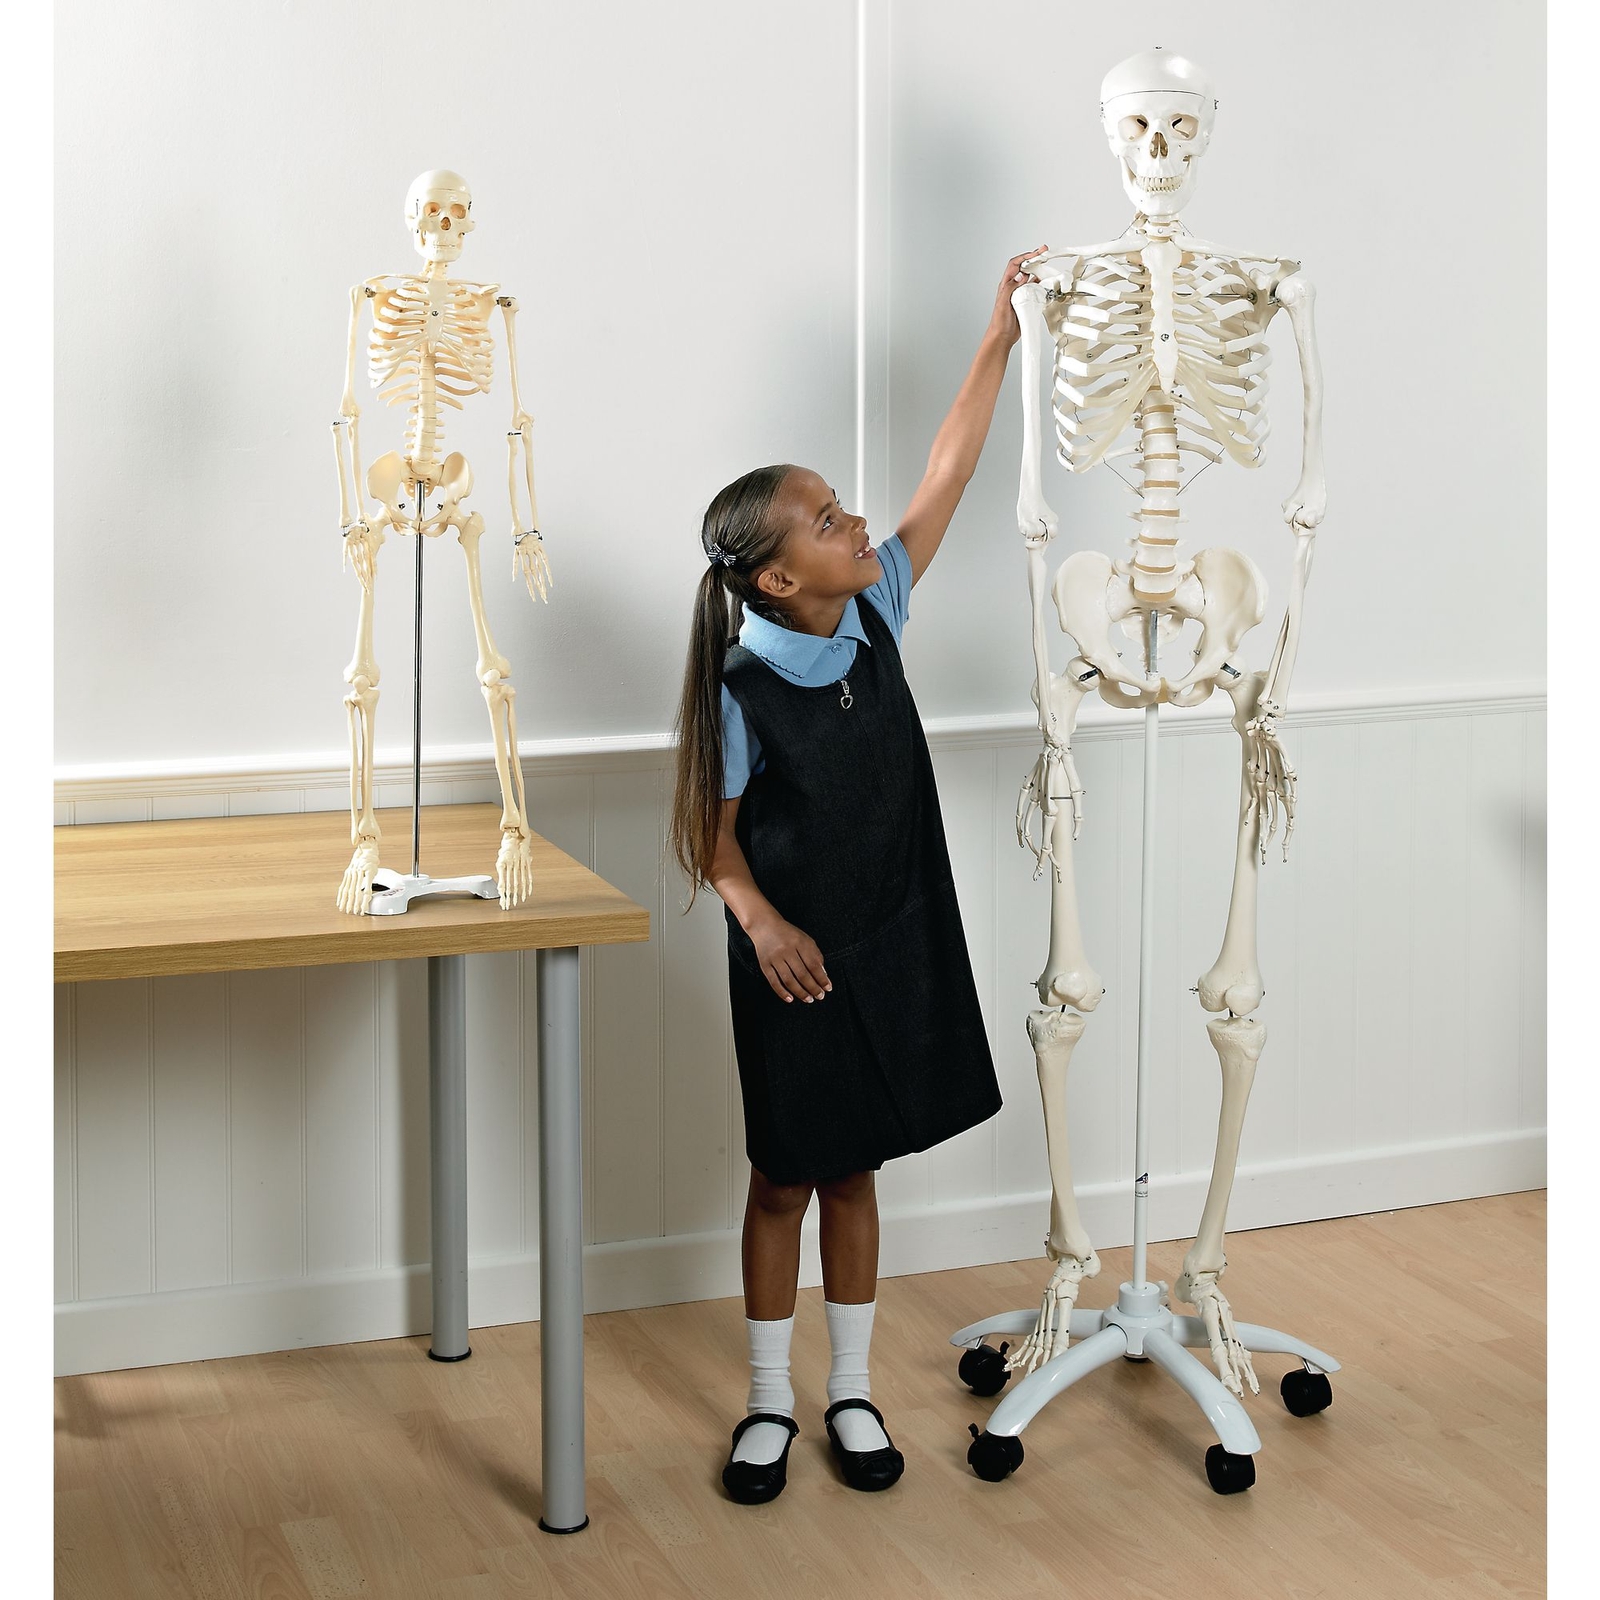 Plastic Skeleton - Full Size